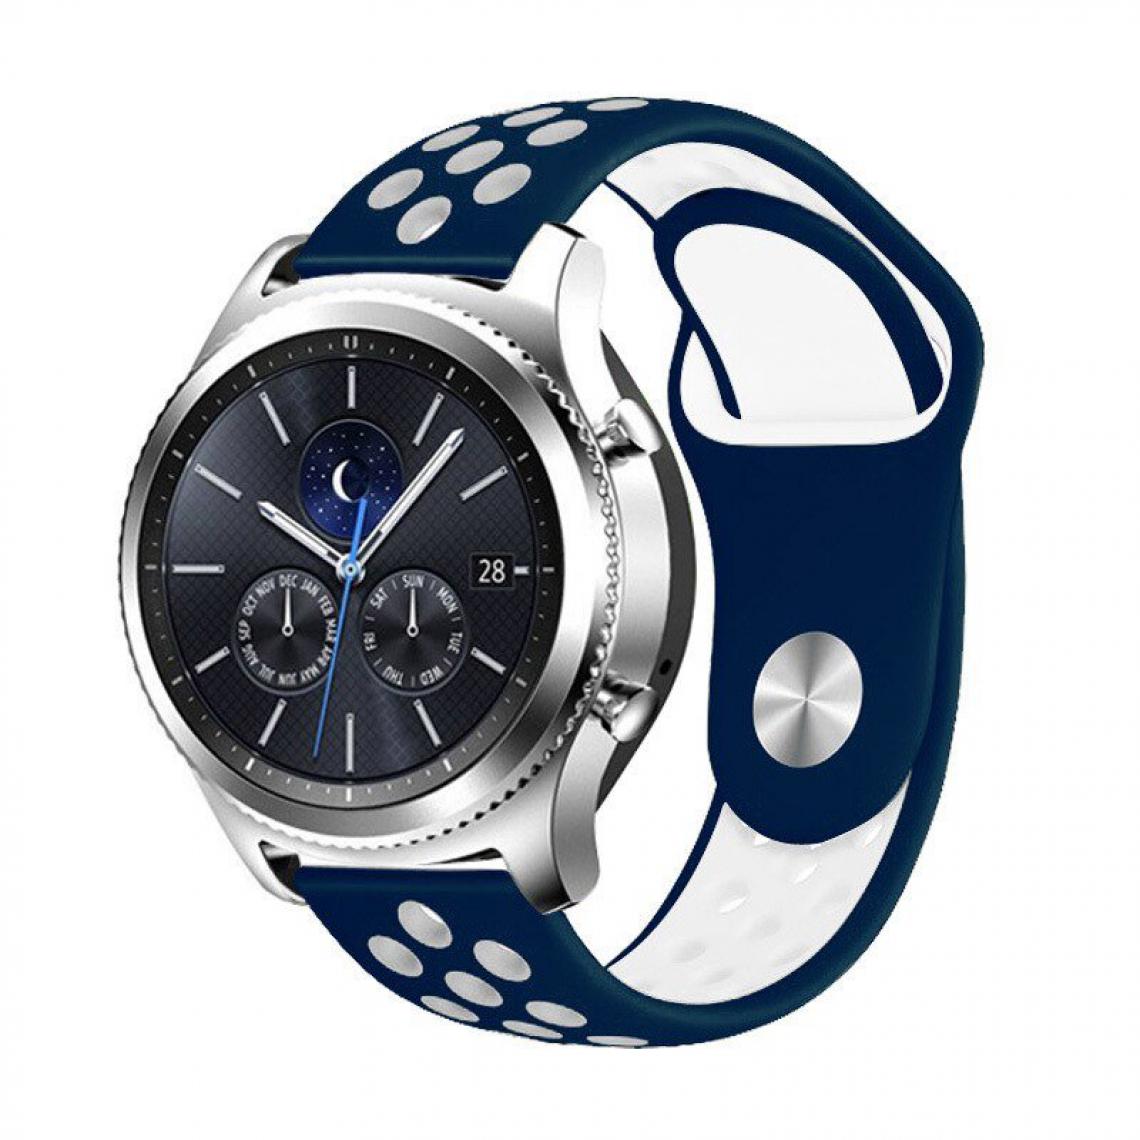 Phonecare - Bracelet SportyStyle pour Garmin Marq Adventurer - Bleu foncé / Blanc - Autres accessoires smartphone